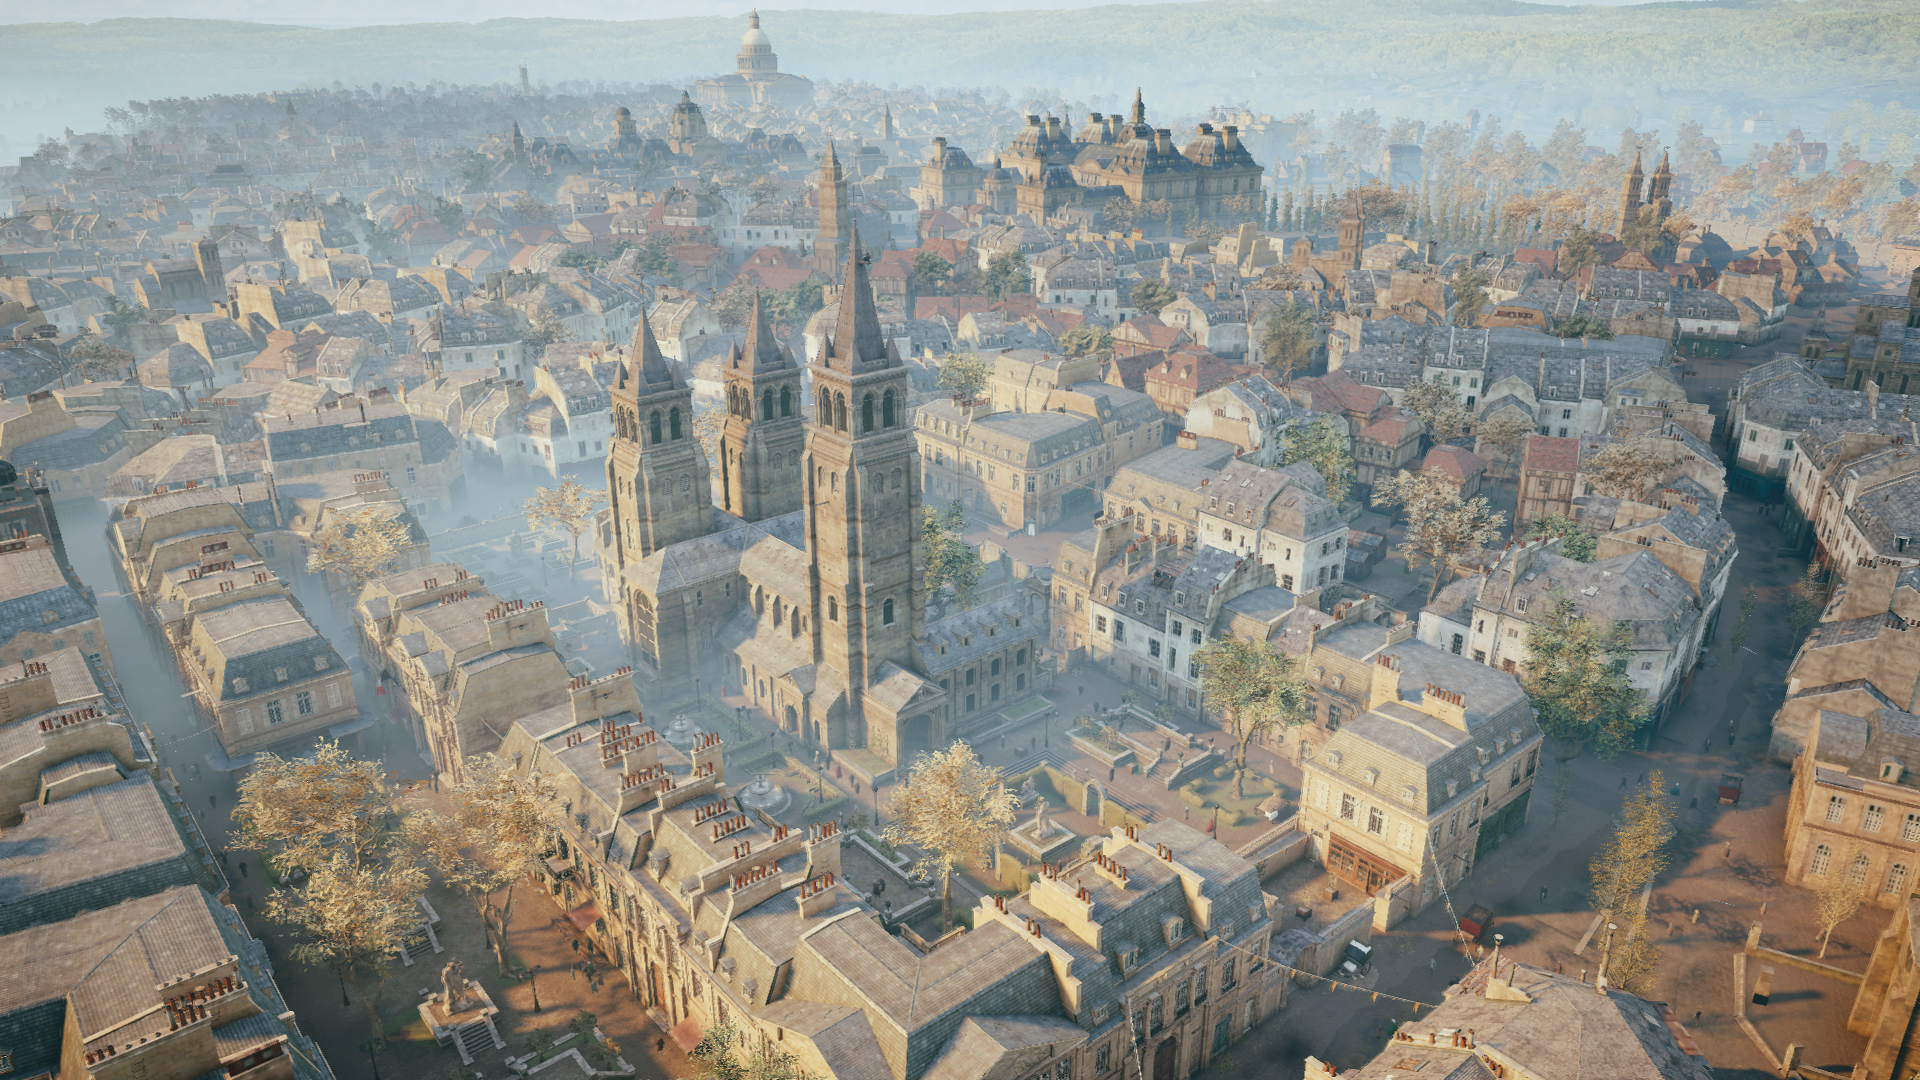 Abbey of Saint-Germain-des-Prés | Assassin's Creed Wiki | Fandom